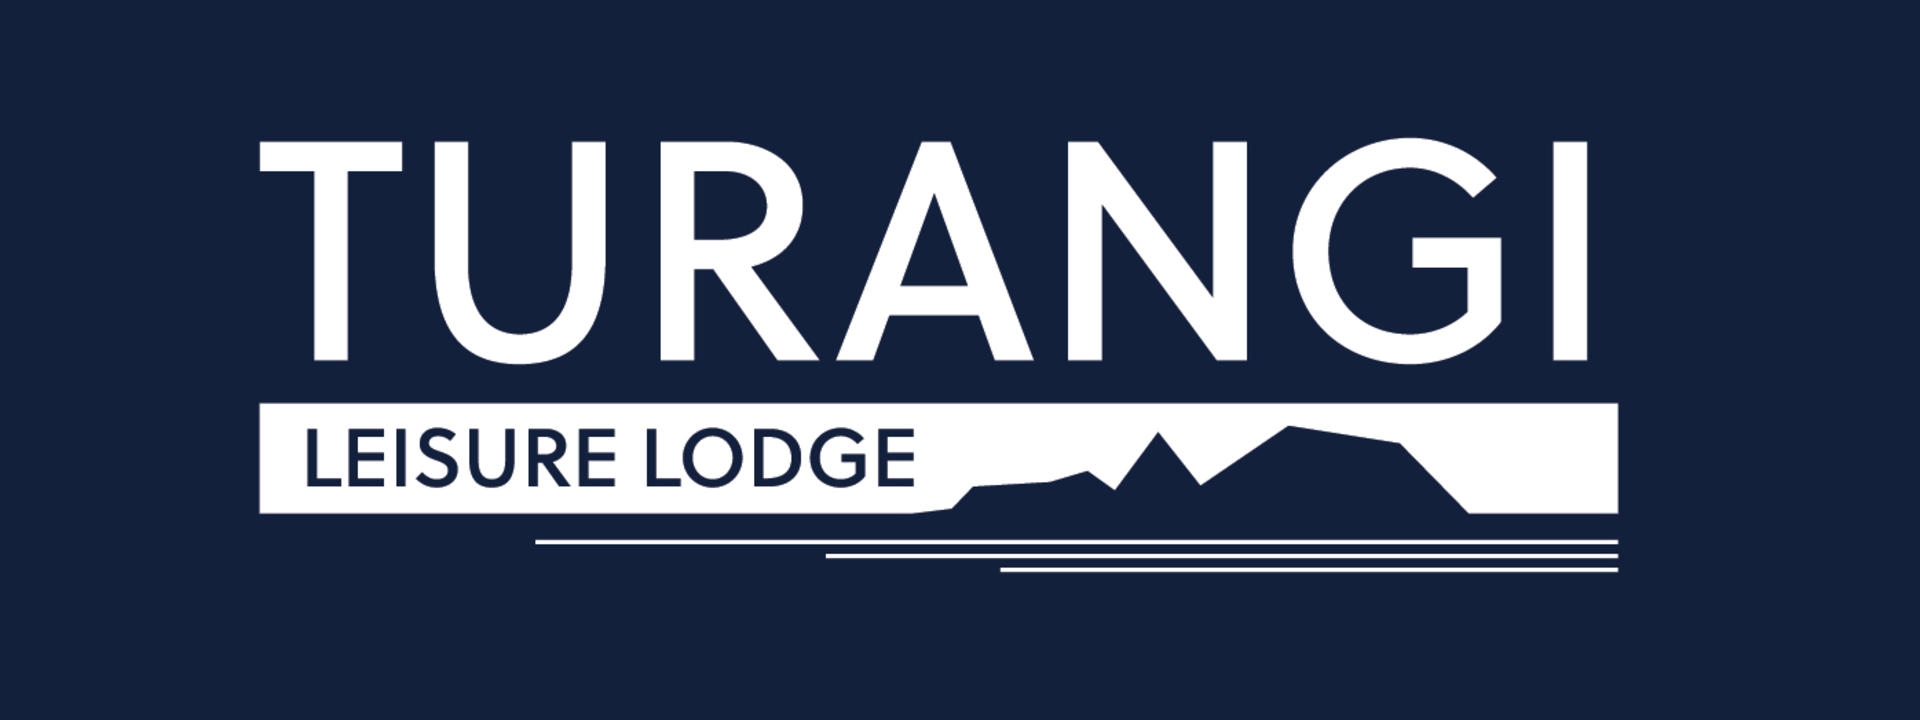 turangi-leisure-lodge-logo.jpg